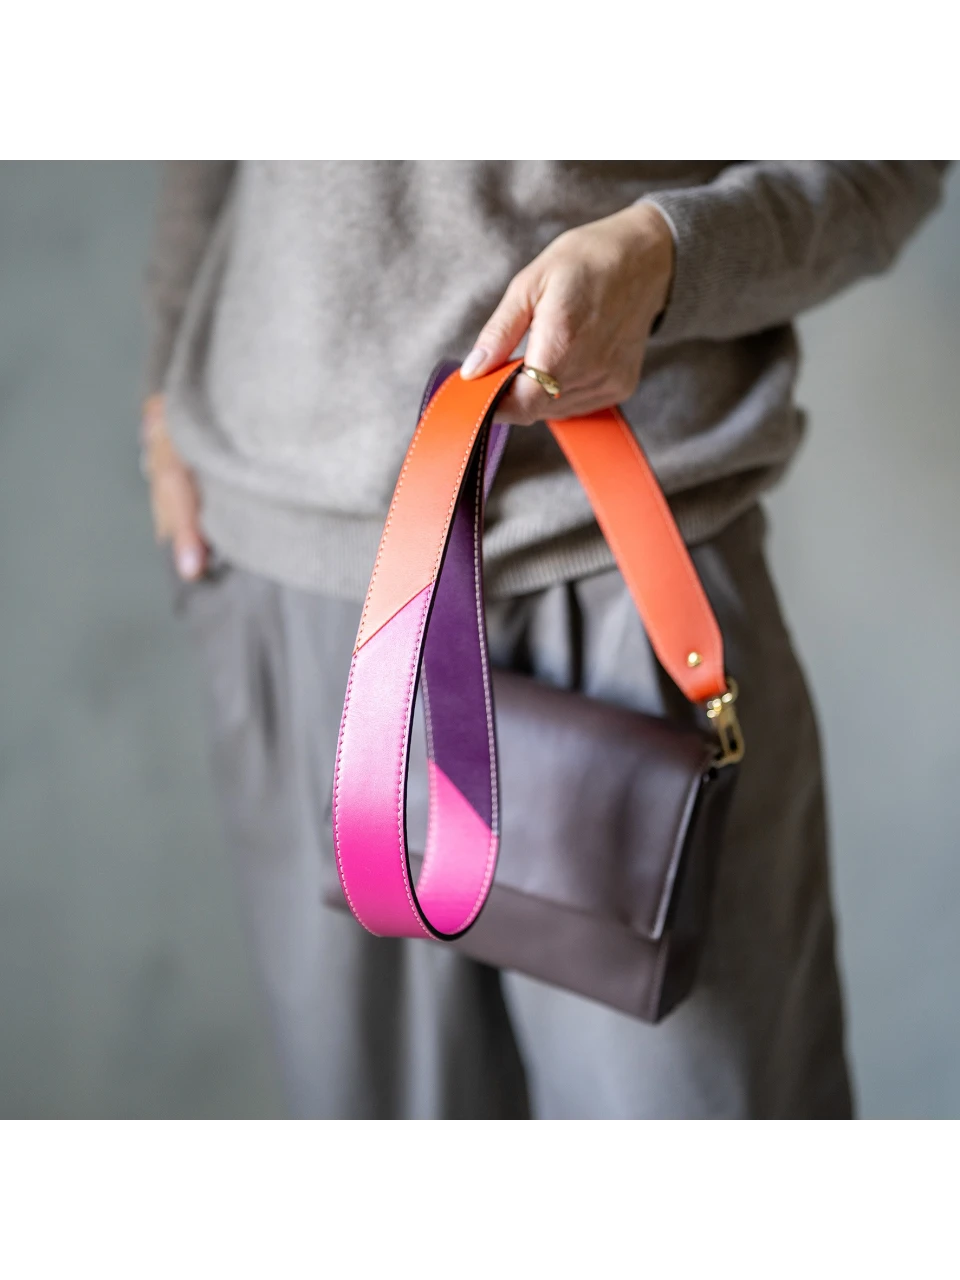 strap-for-bag-tricolor-plum-pink-orange